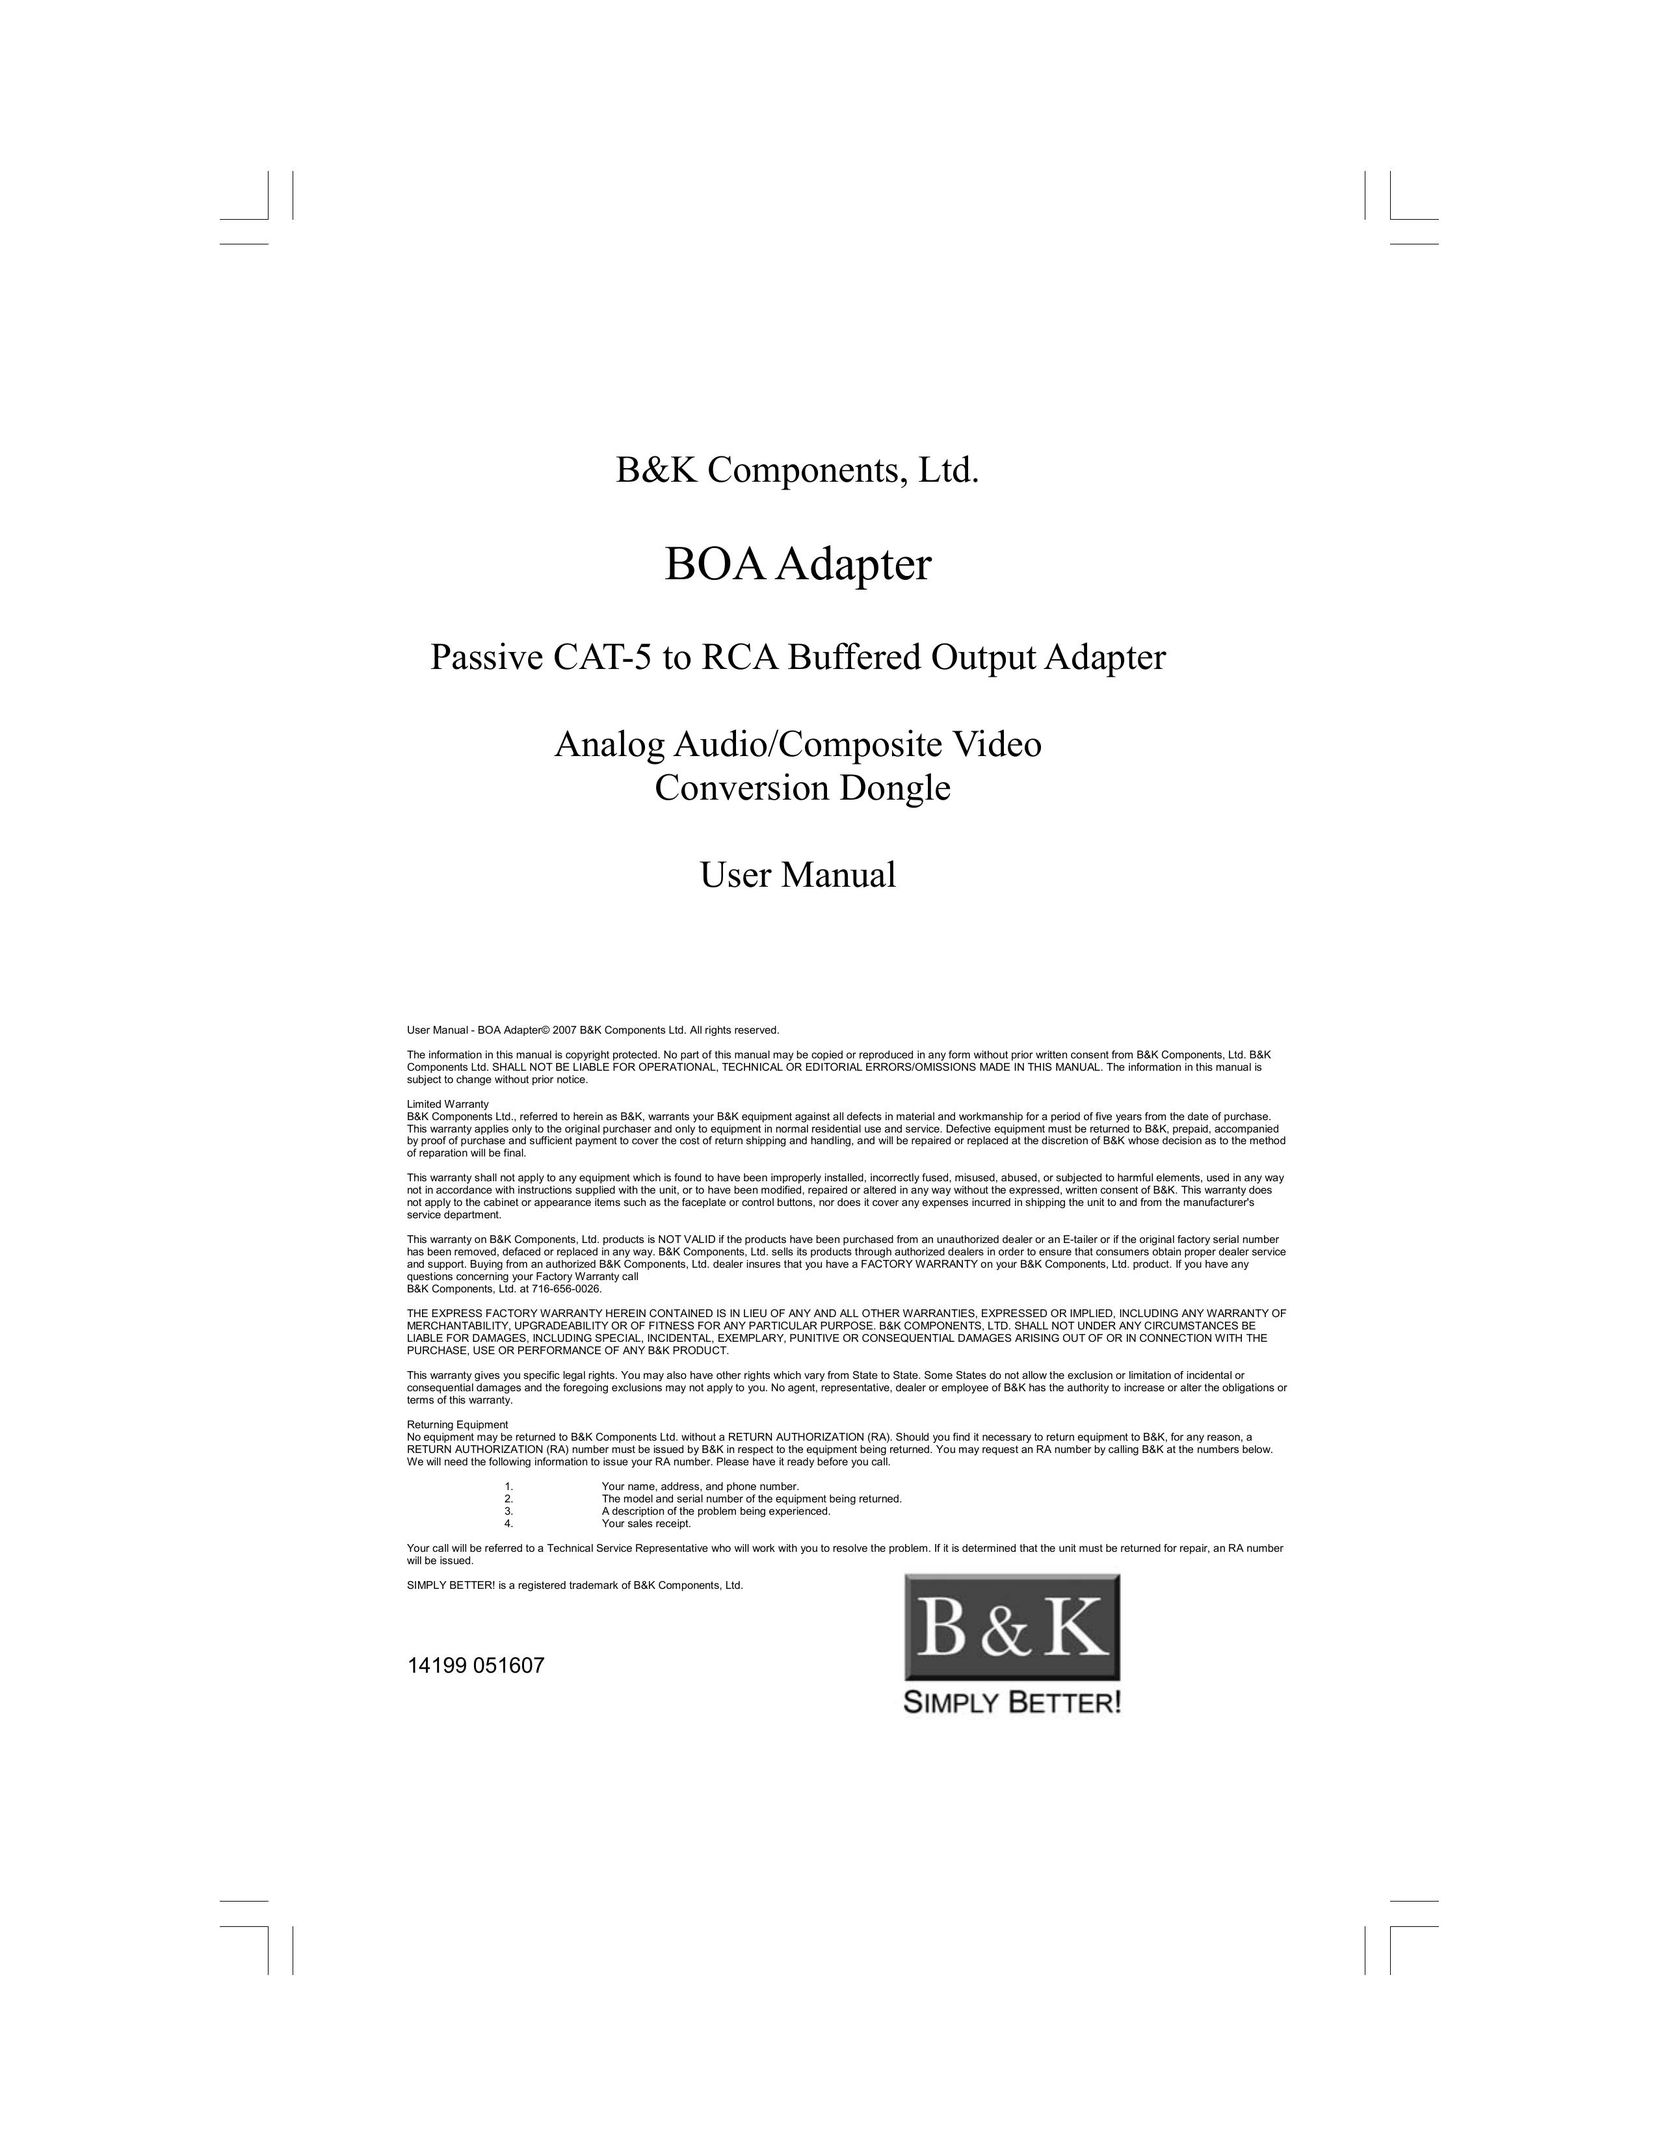 B&K BOA Adapter Network Card User Manual